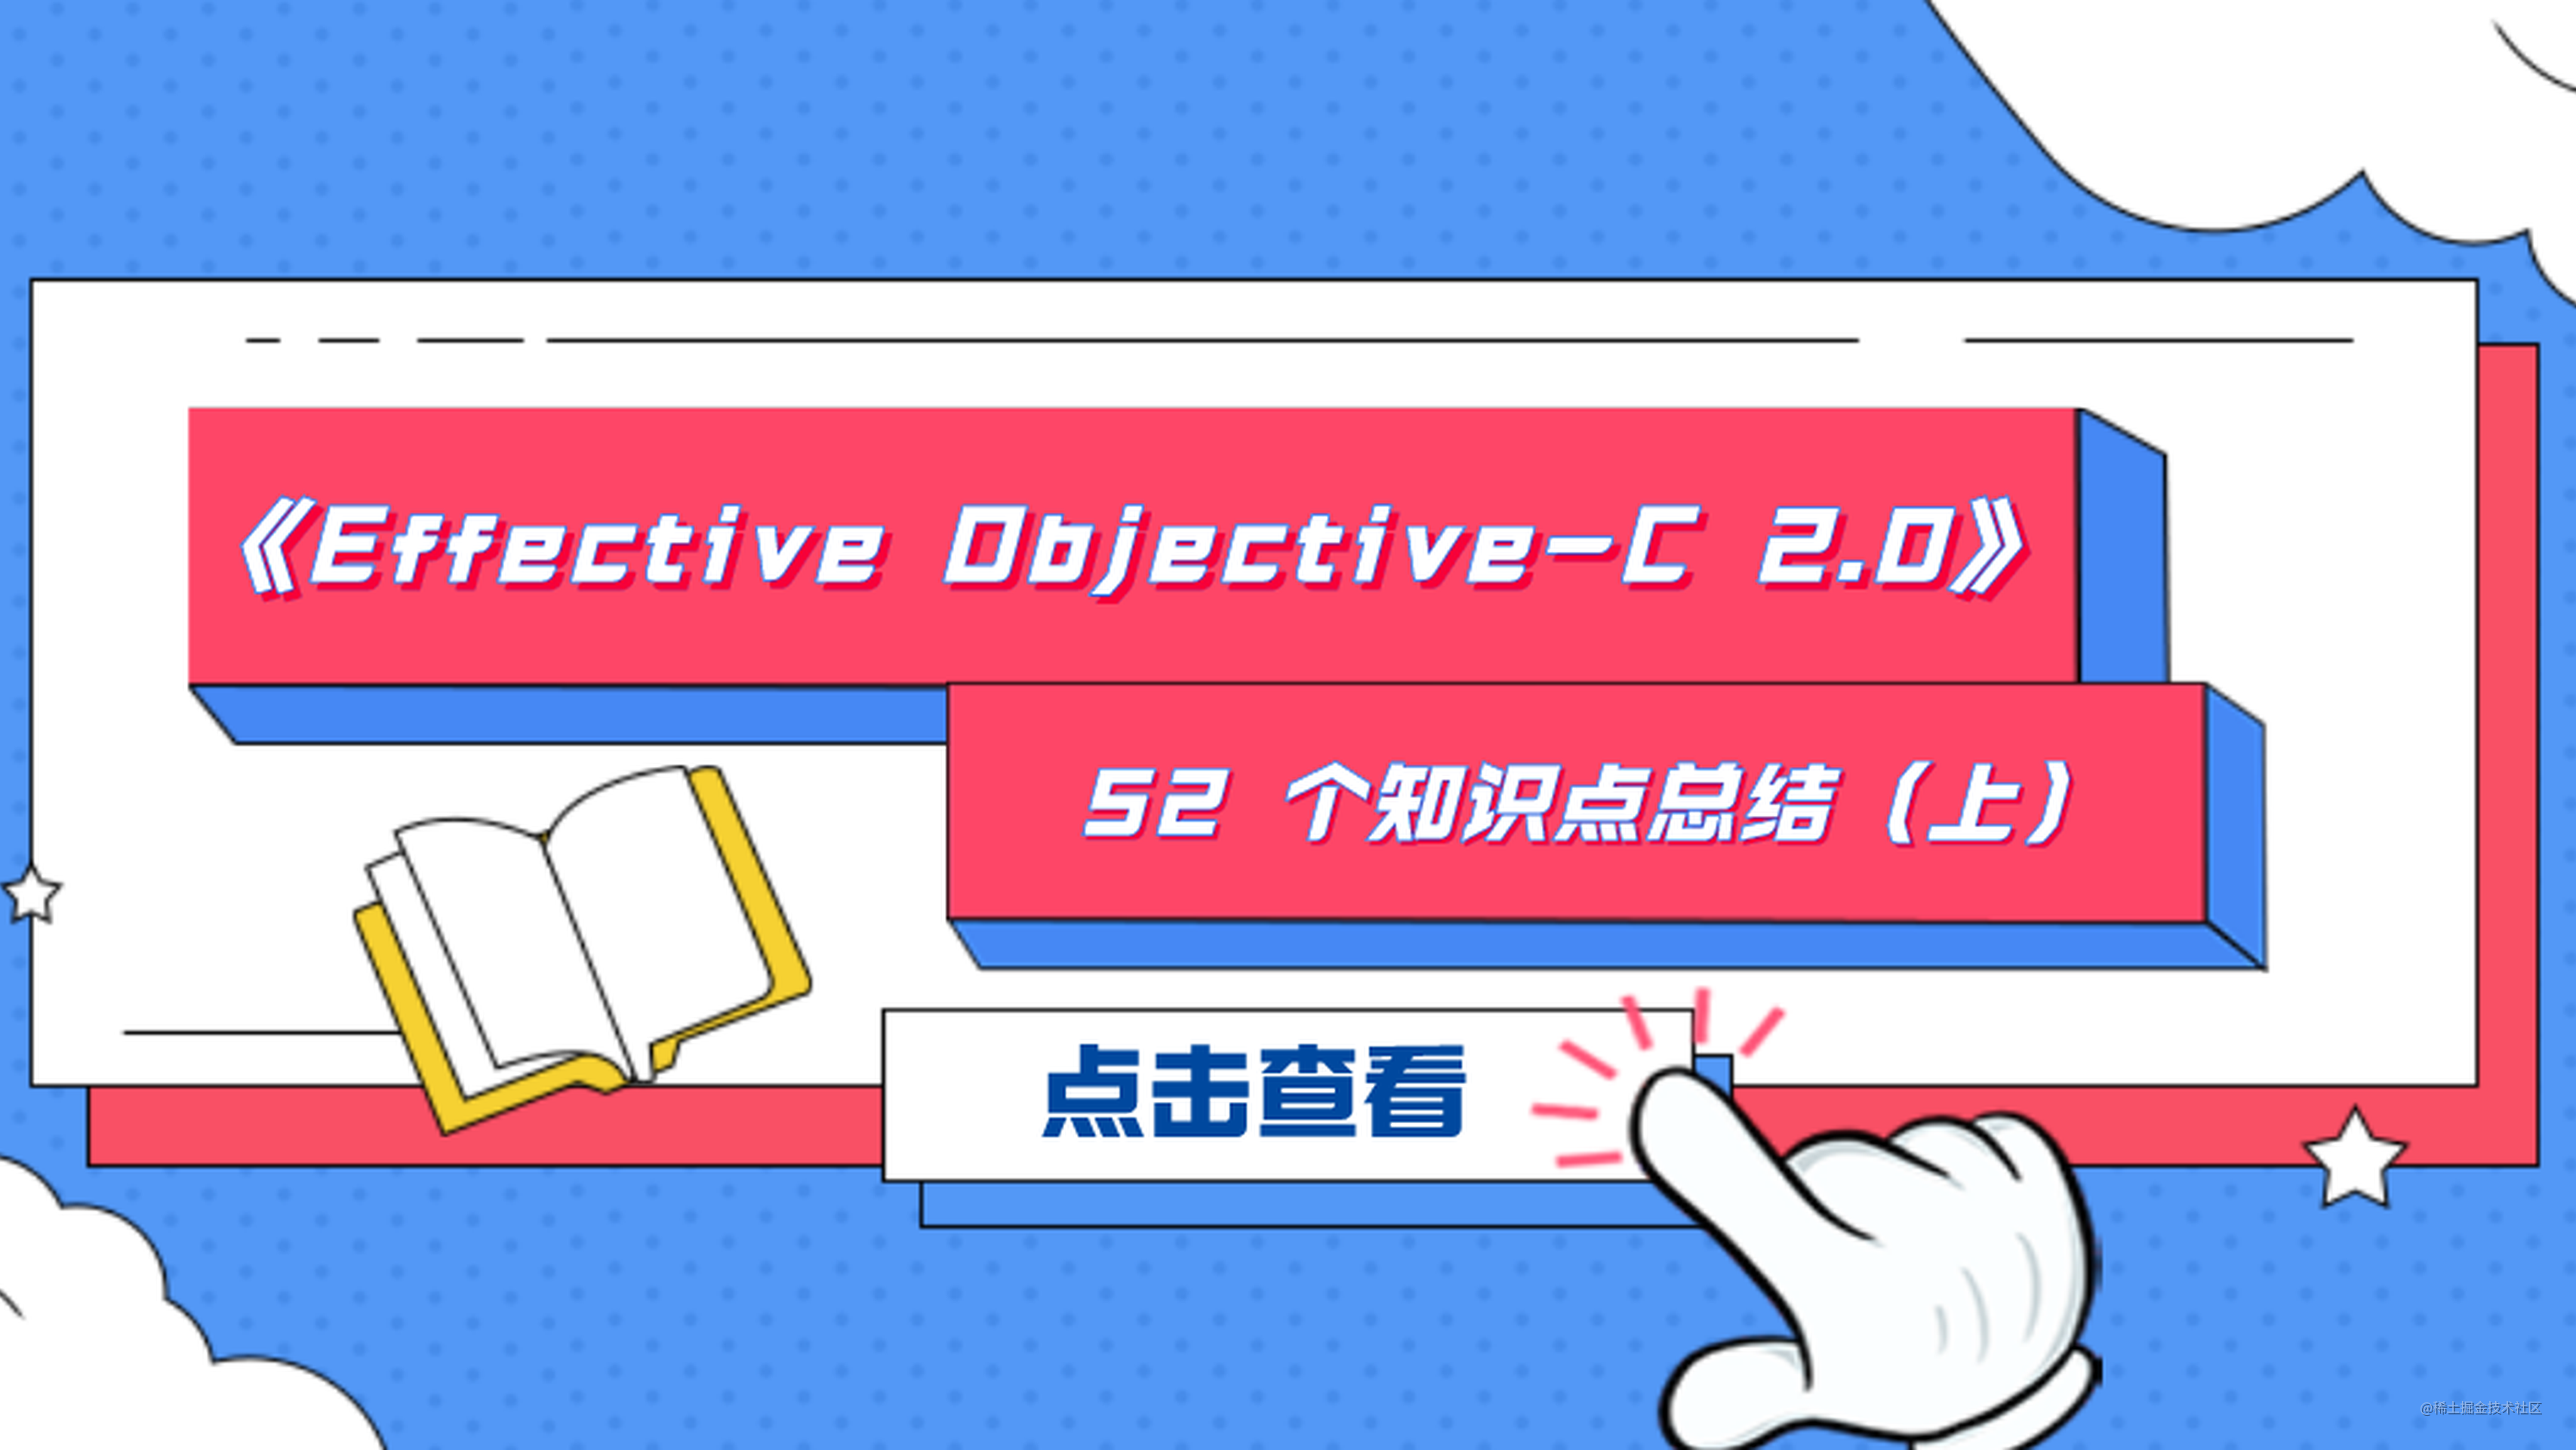 「建议收藏」《Effective Objective-C 2.0》52 个知识点总结（上）